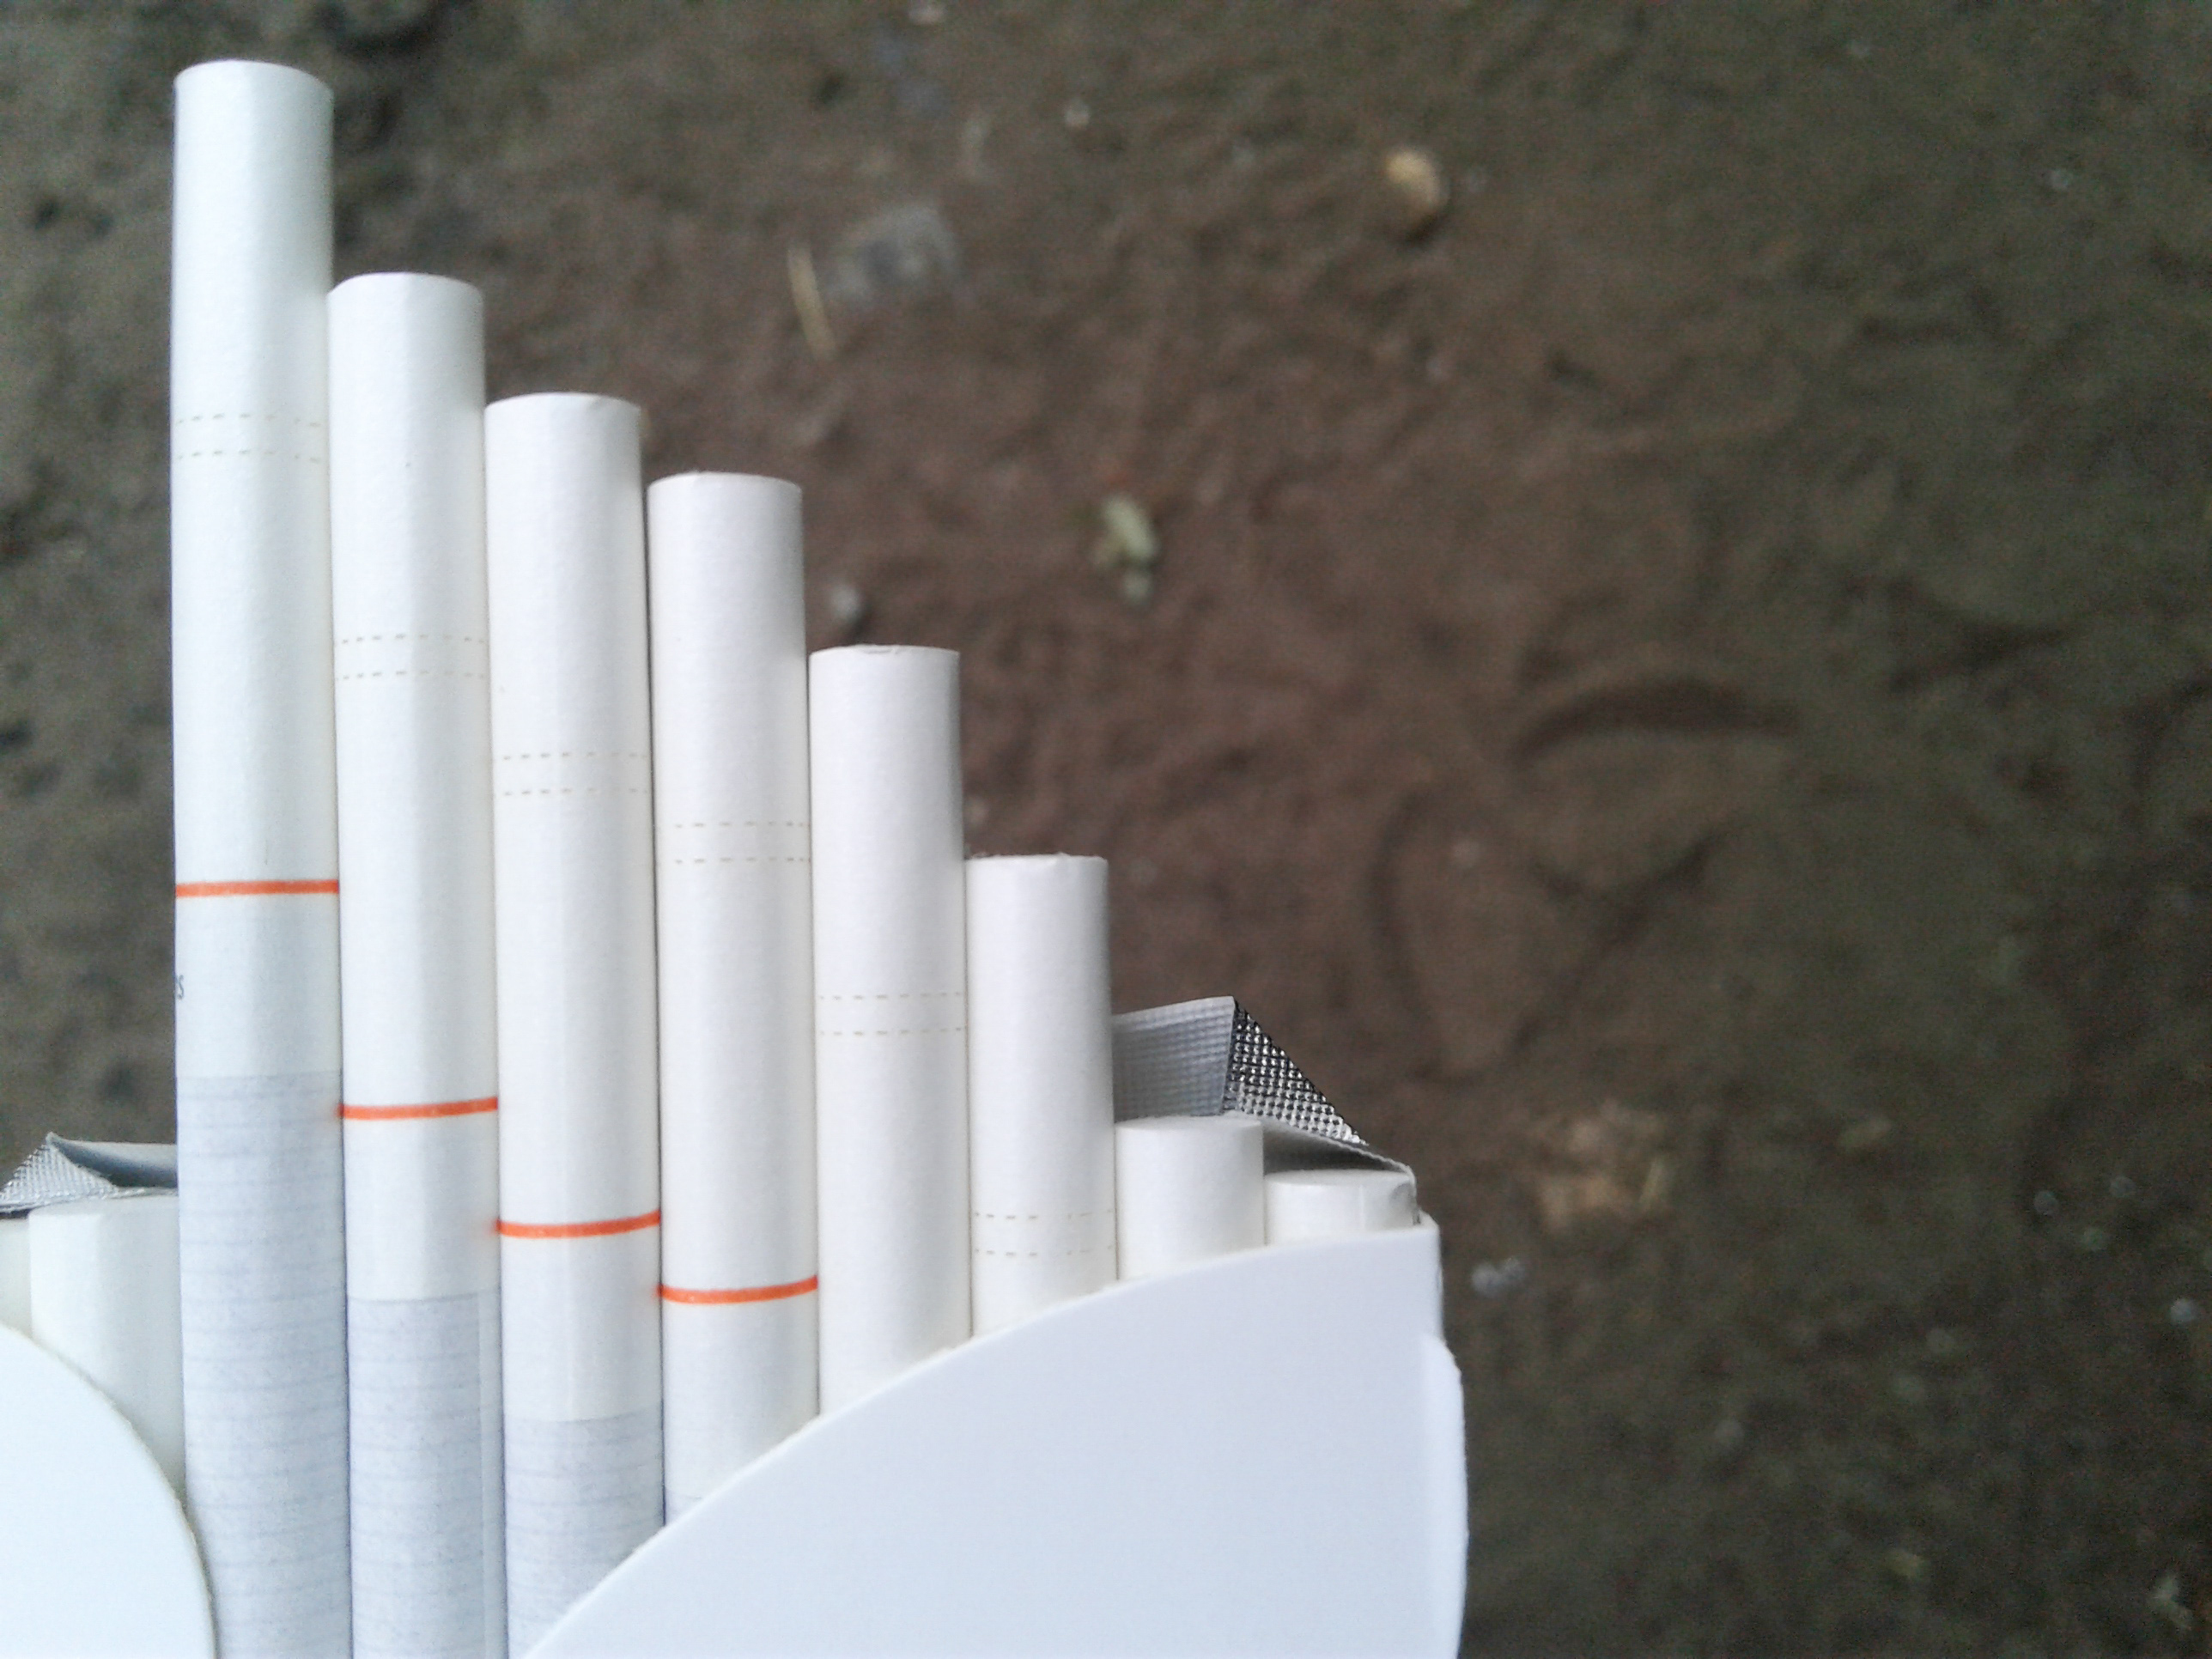 Нелегално произвежданите цигари са били укривани в тръби или строителни панели